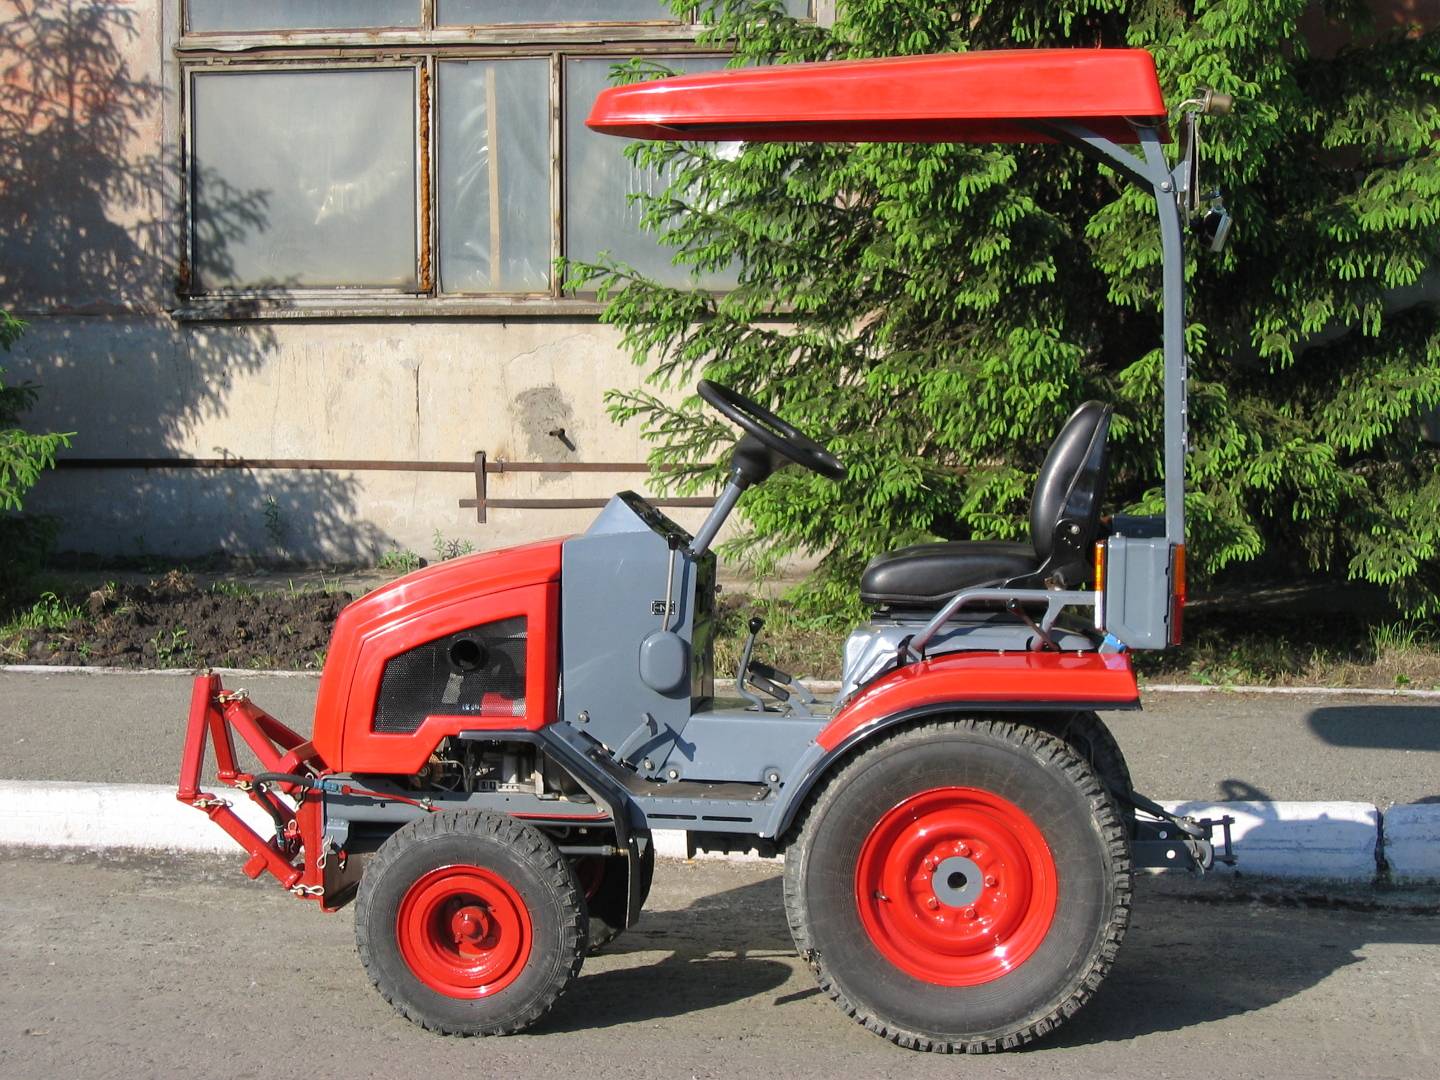 Технические характеристики мини-трактора кмз-012: размеры, вес